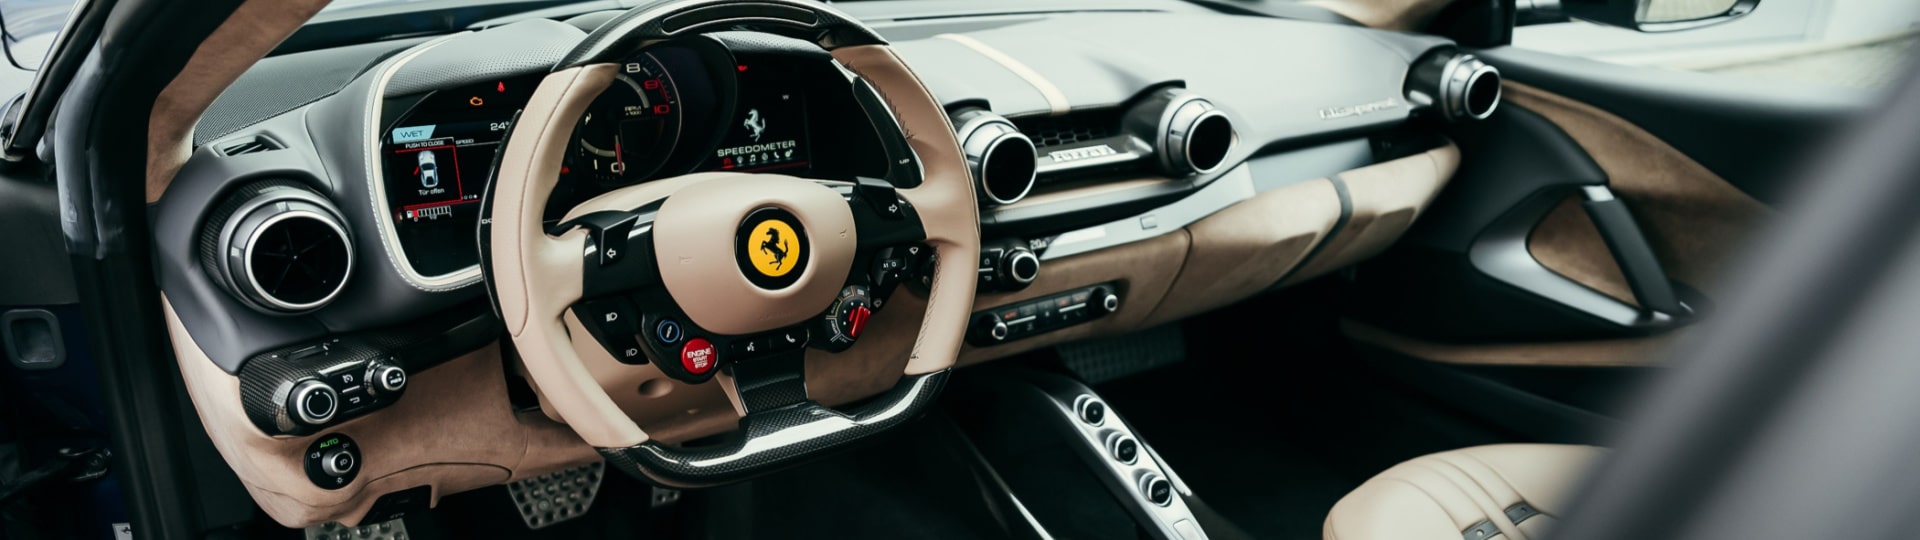 Automobilka Ferrari výrazně zvýšila čtvrtletní zisk